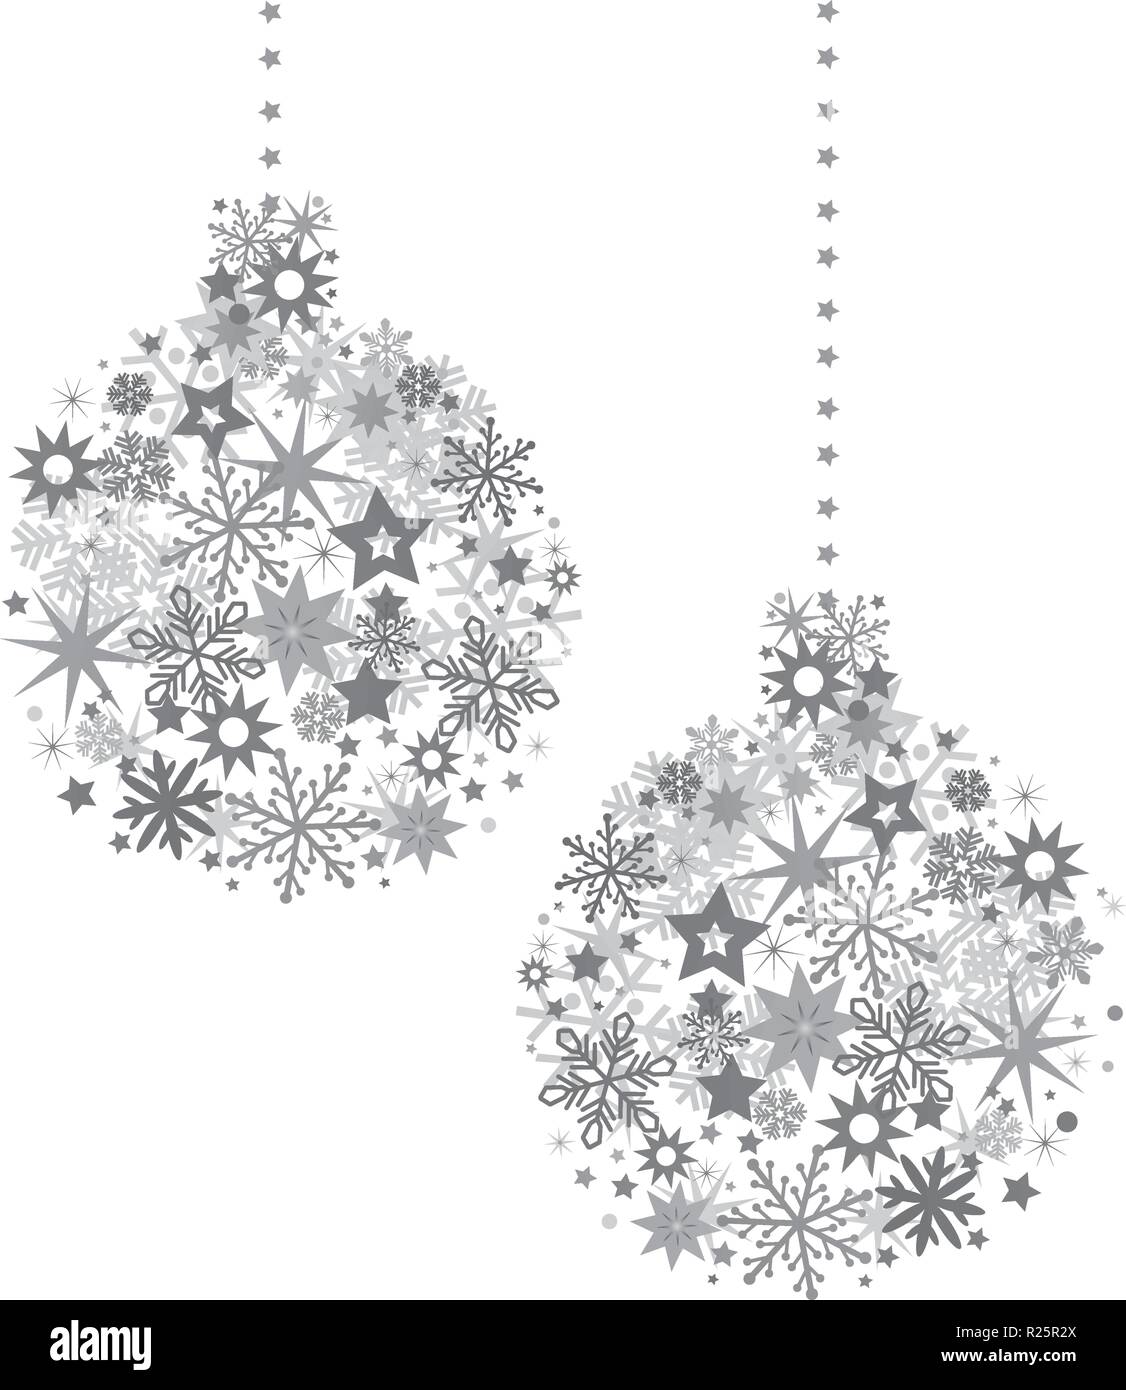 Christmas Ball mit silbernen Sternen Abbildung mit funkelnden Weihnachten Glitter Ornamente isoliert auf weißem Stock Vektor